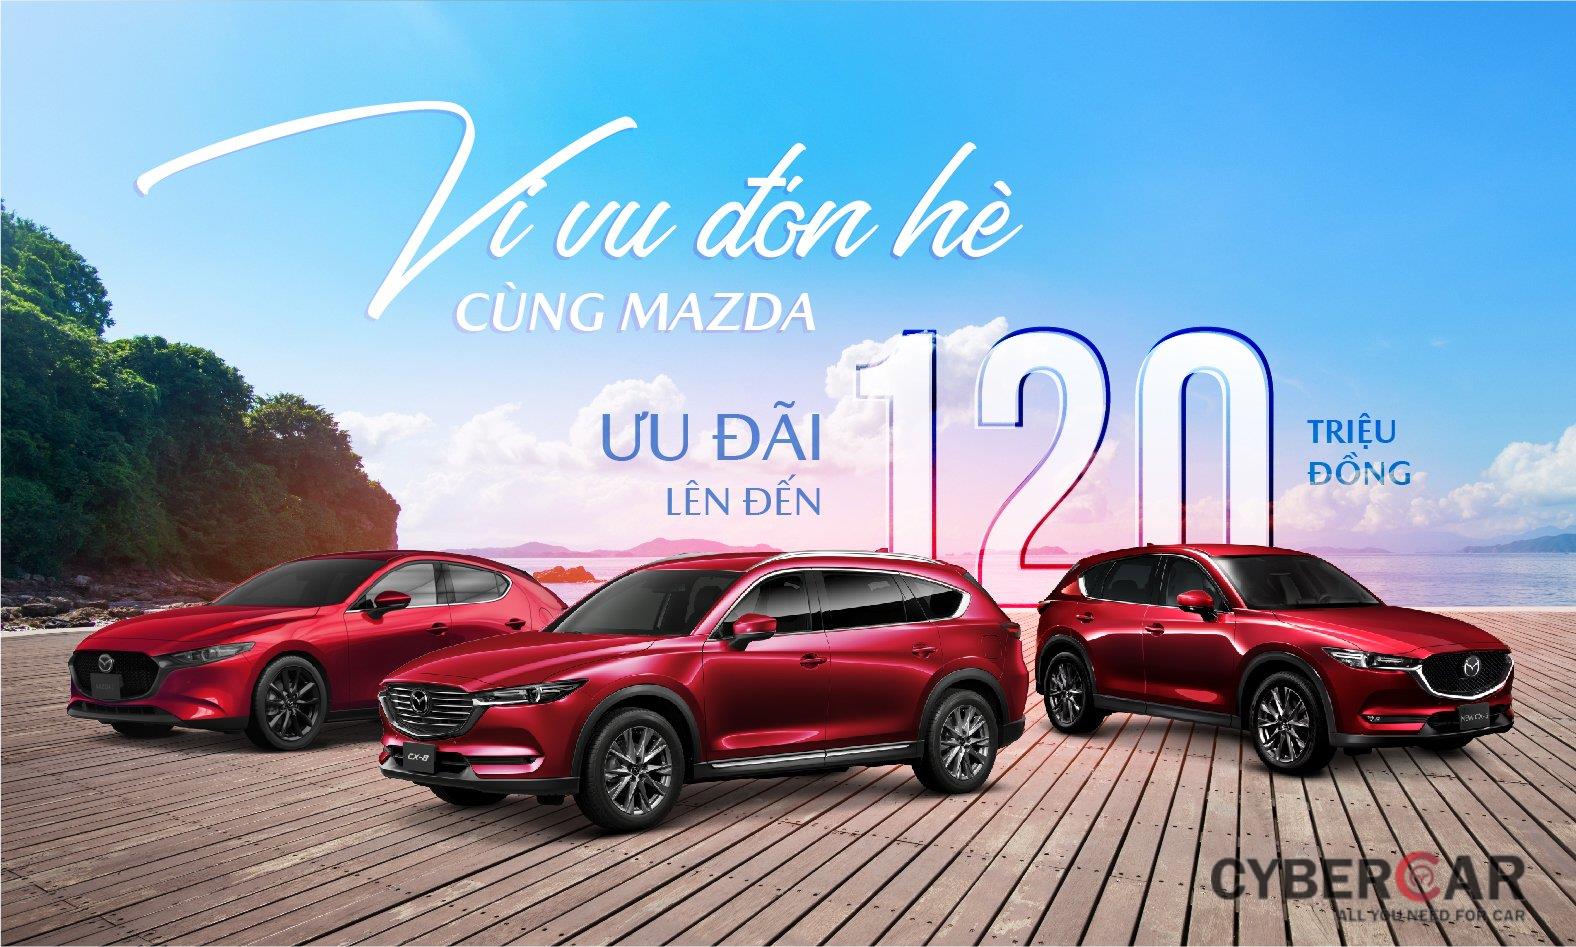 Mazda tung chương trình ưu đãi đặc biệt lên tới 120 triệu đồng mừng đại lễ 30/4 1